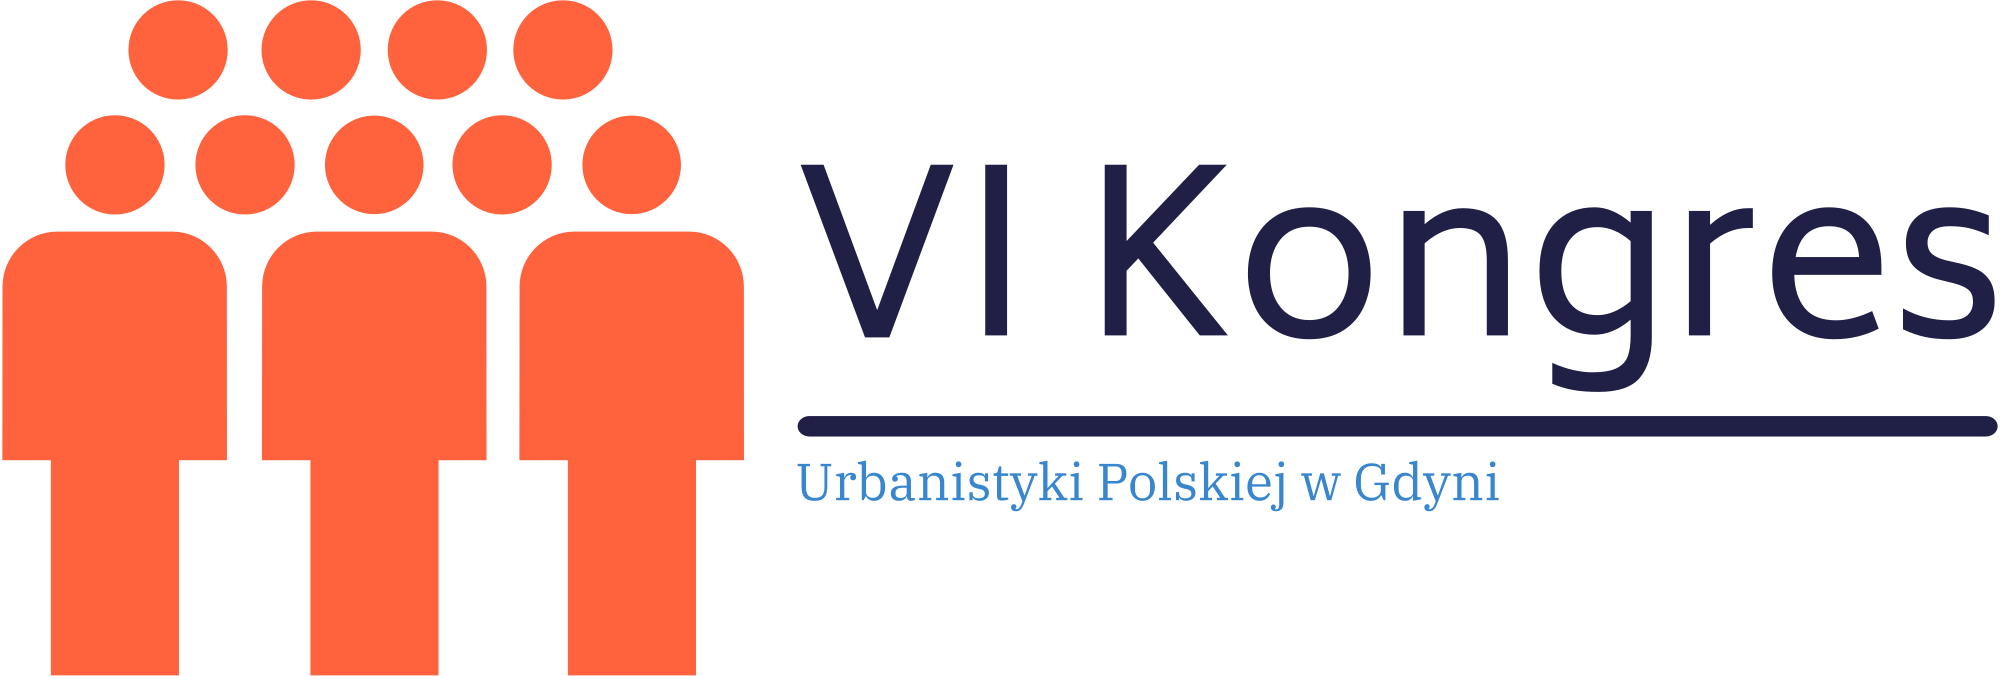 VI Kongresu Urbanistyki Polskiej w Gdyni